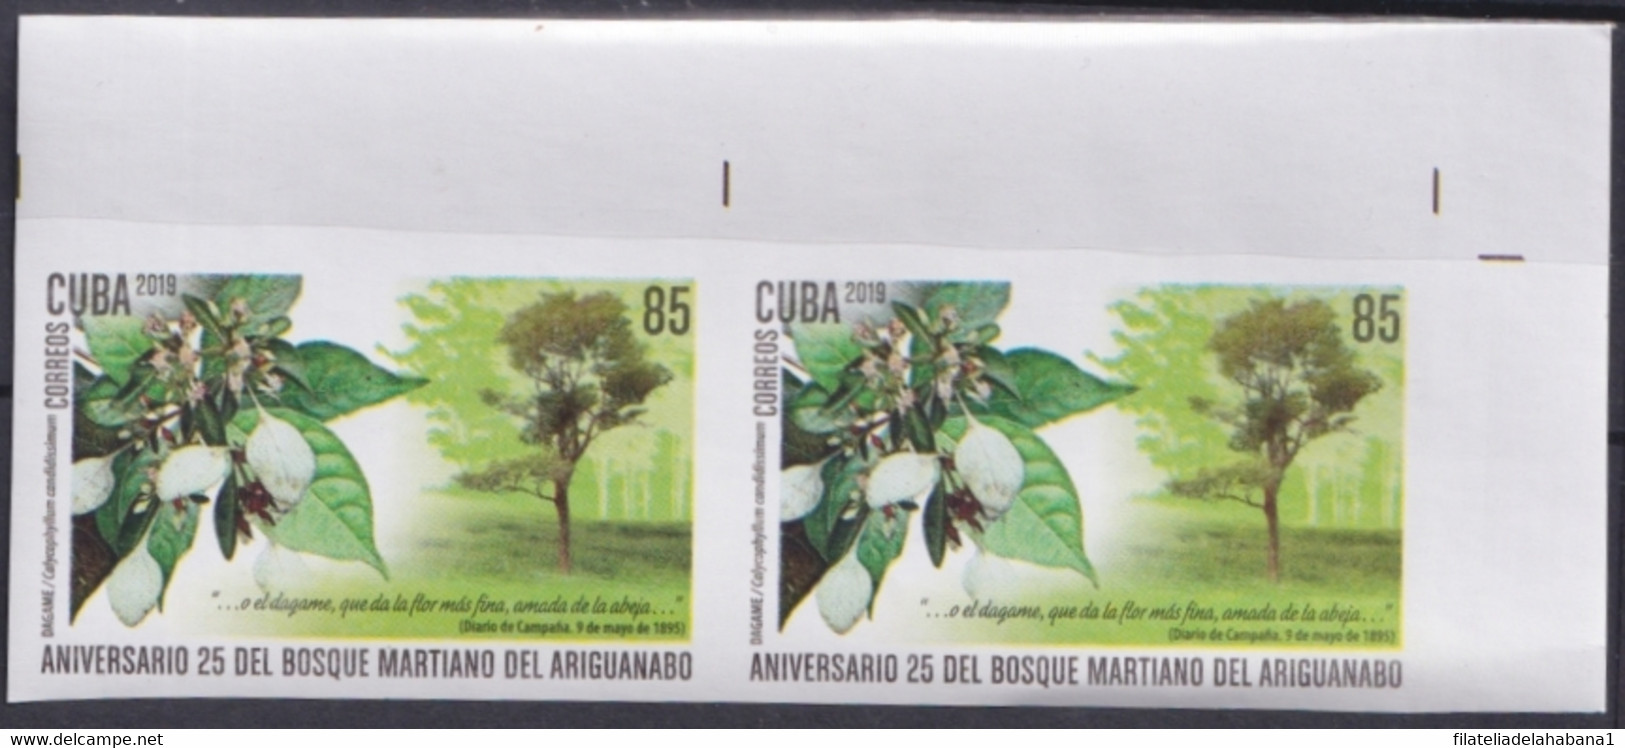 2019.208 CUBA MNH 2019 IMPERFORATED PROOF 85c MARTI TREE ARIGUANABO DAGAME. - Non Dentellati, Prove E Varietà